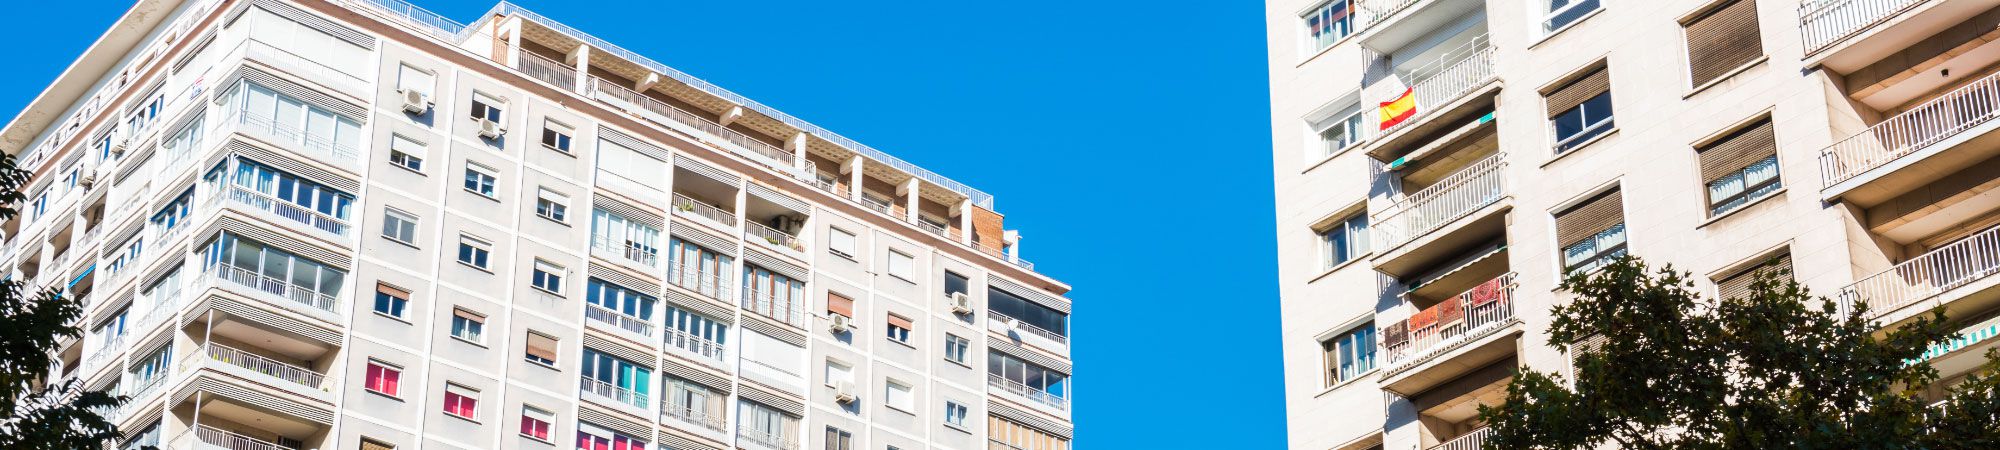 Amplia oferta de pisos, áticos, locales . ZARMA REAL-ESTATE, S.L. en Mataró